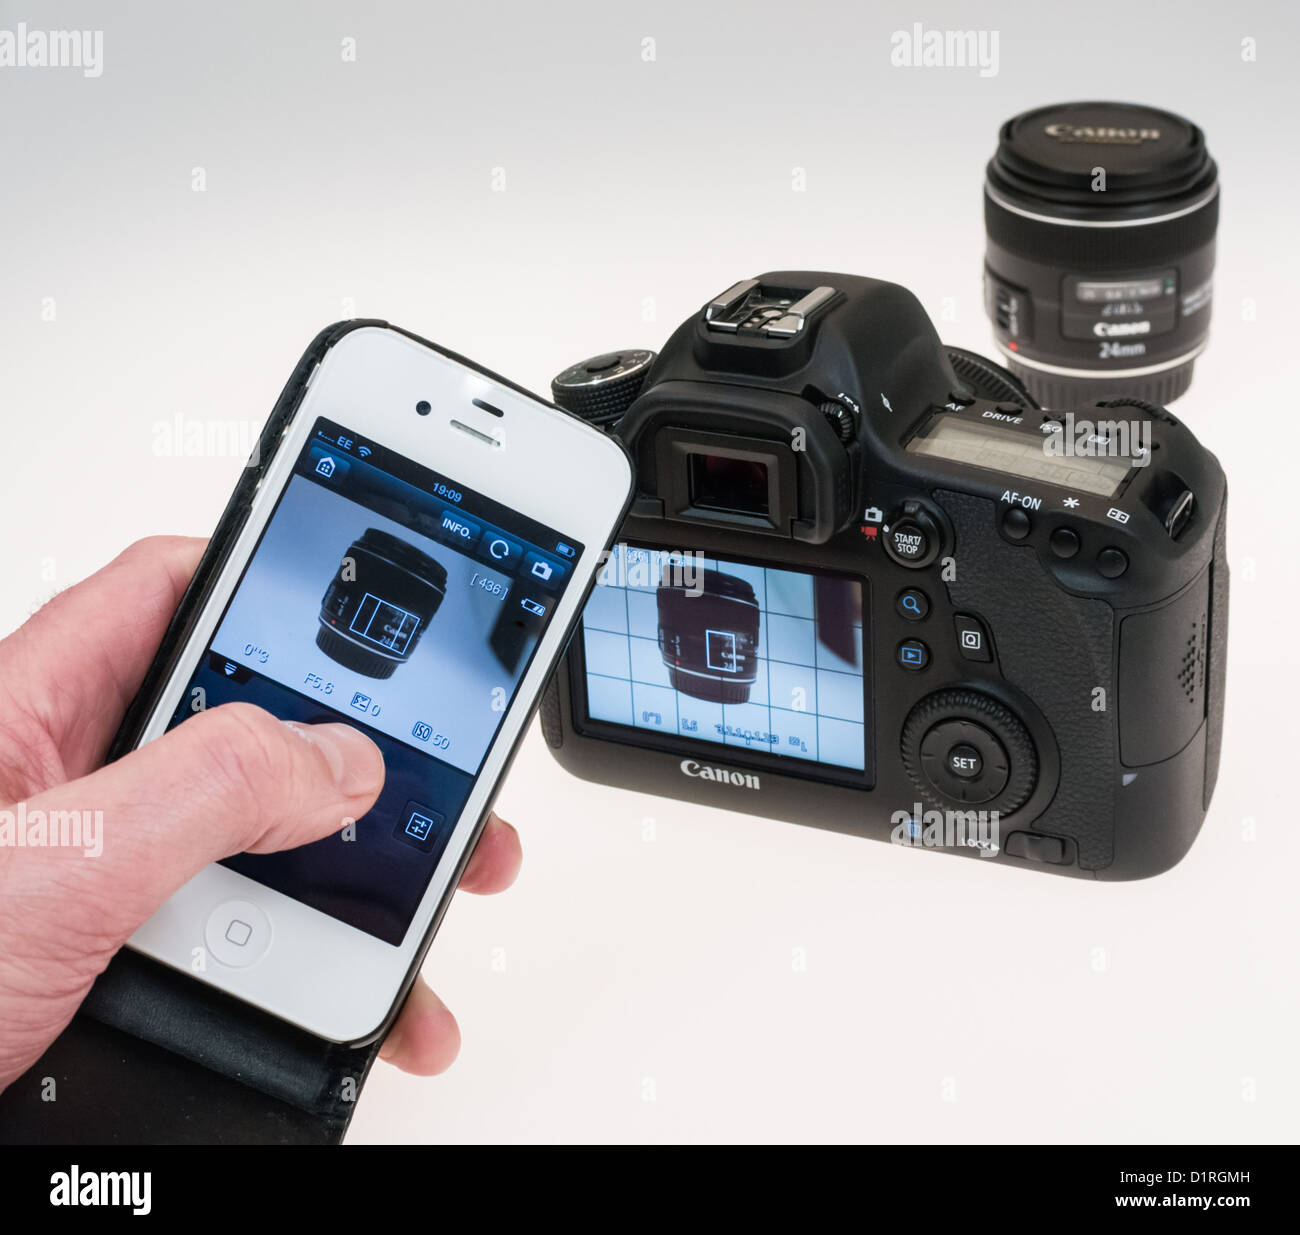 Canon EOS 6D fotocamera - WiFi attivato i collegamenti della telecamera per  EOS App Remote su iPhone di Apple per controllare la telecamera e cattura  di immagini Foto stock - Alamy